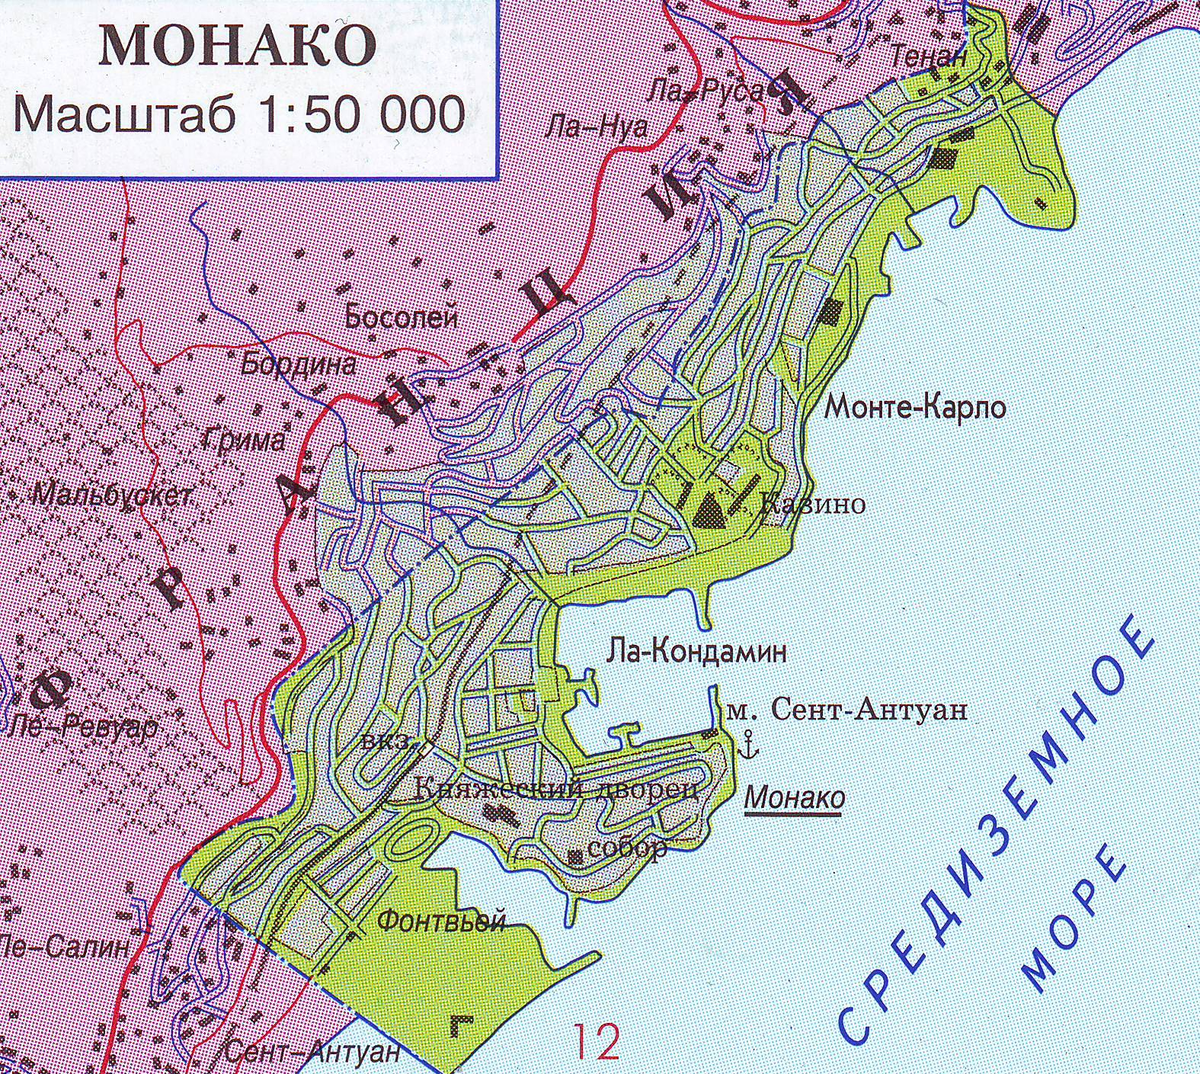 Где находится монте карло какая страна. Княжество Монако на карте. Показать на карте государство Монако. Монако географическое положение карта.